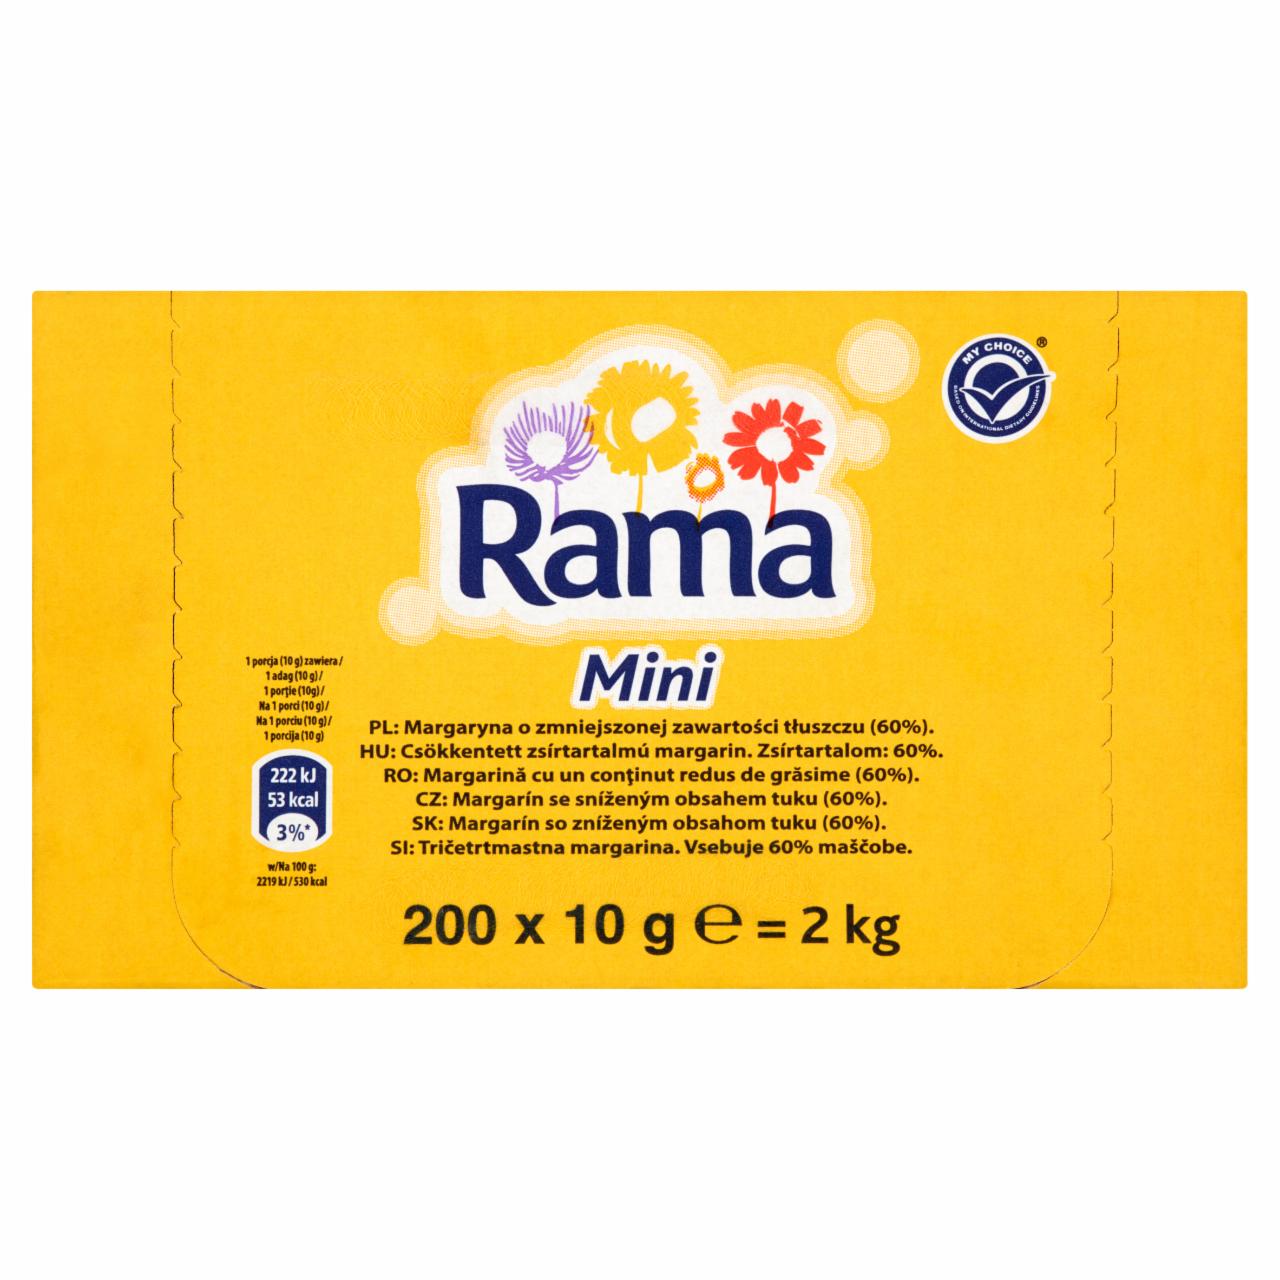 Zdjęcia - Rama Mini Margaryna 2 kg (200 x 10 g)